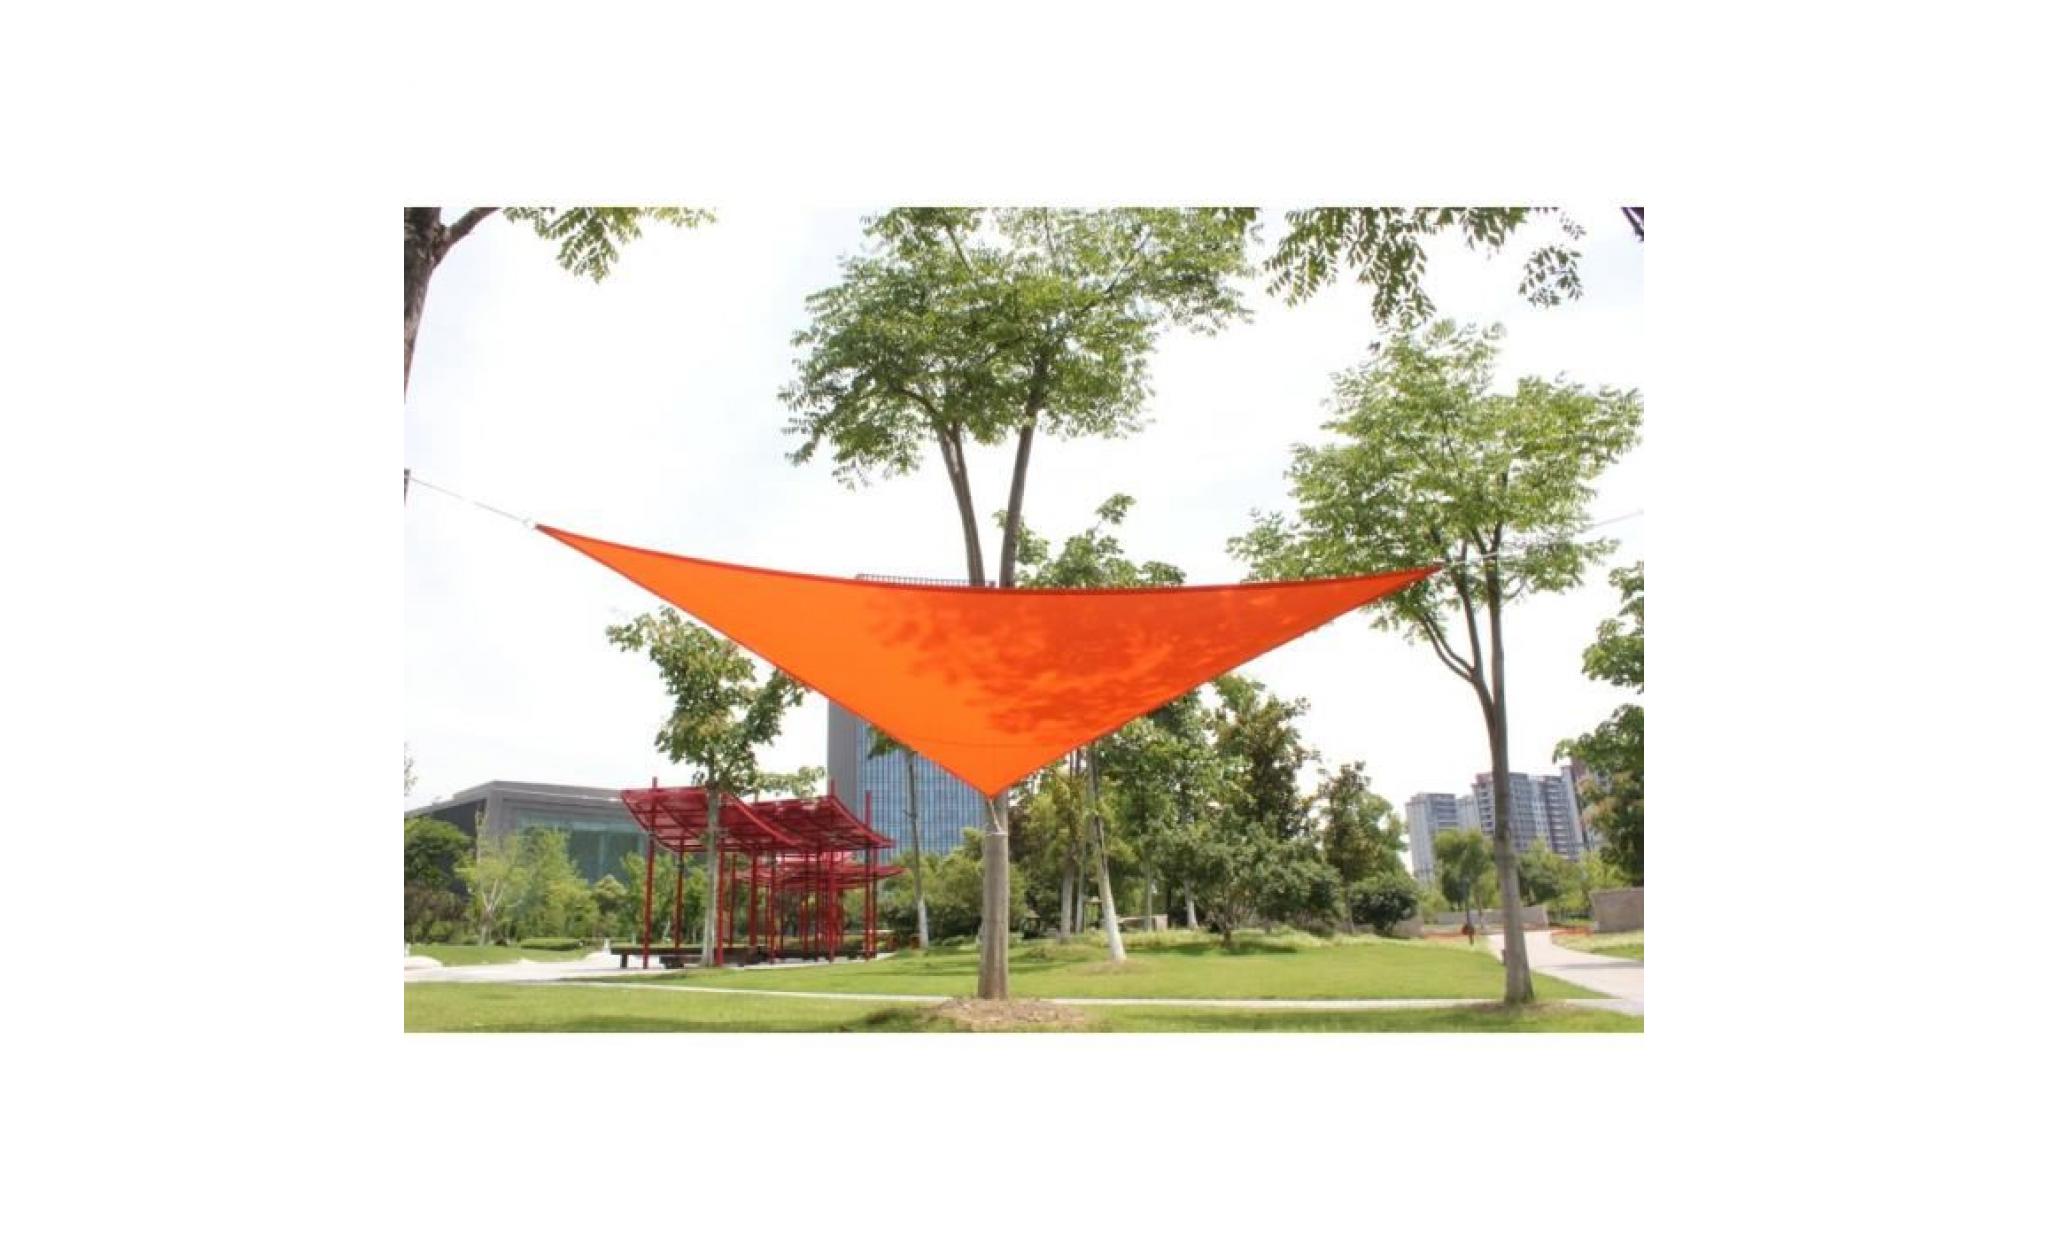 laxllent voiles d'ombrage,3.6x3.6x3.6m,orange,toile triangulaire tissu anti uv imperméable à l'eau en polyester pour jardin,terrasse